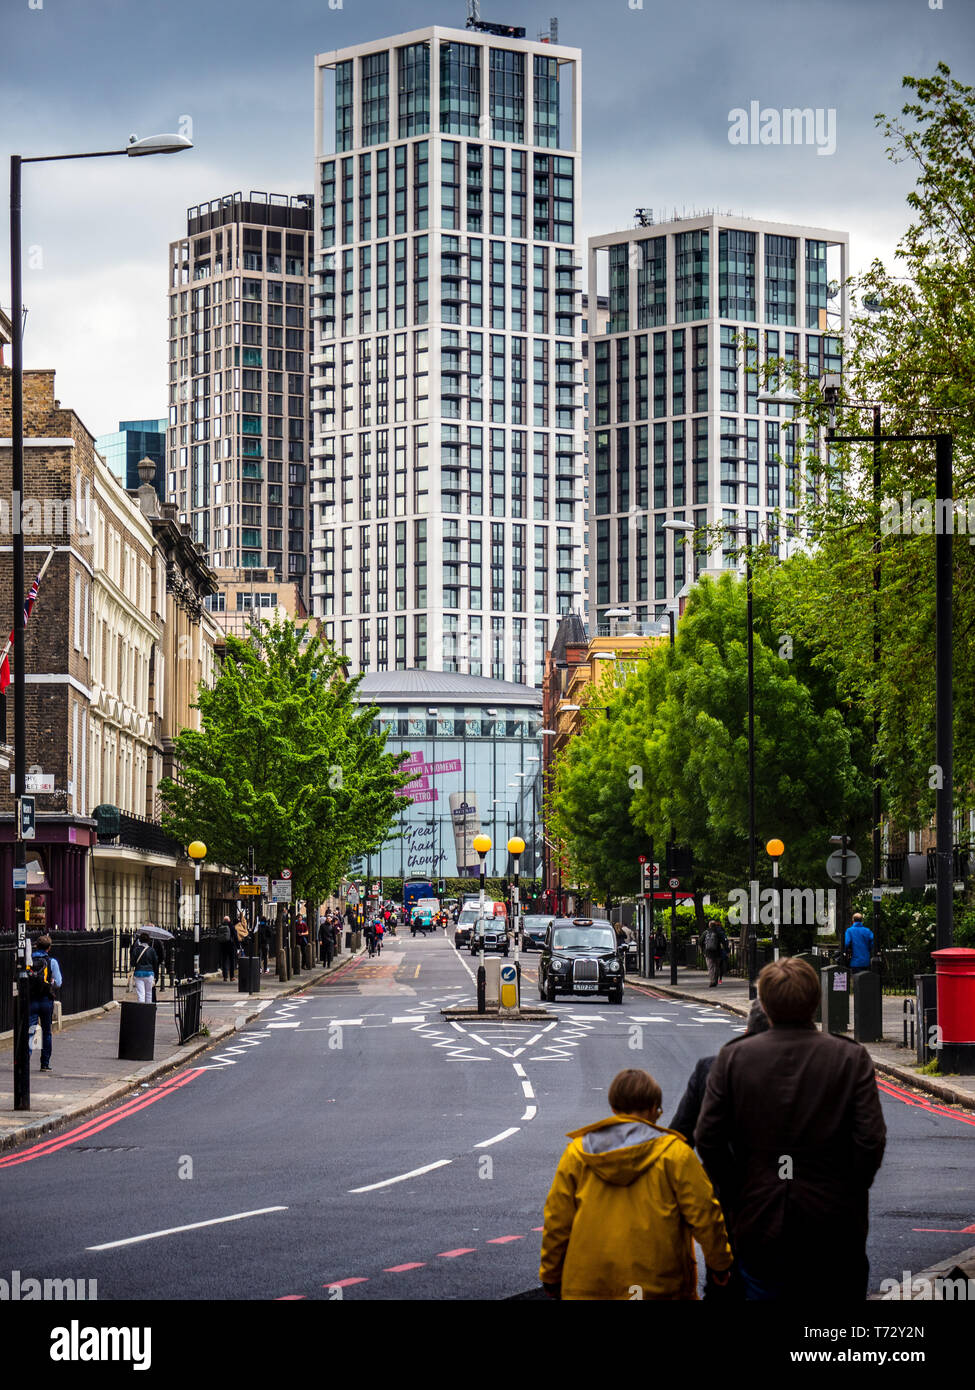 Southbank Ort Entwicklung London - Casson Square Gebäuden Architekten Squire und Partner 2019 Blick auf die Stamford Street Stockfoto